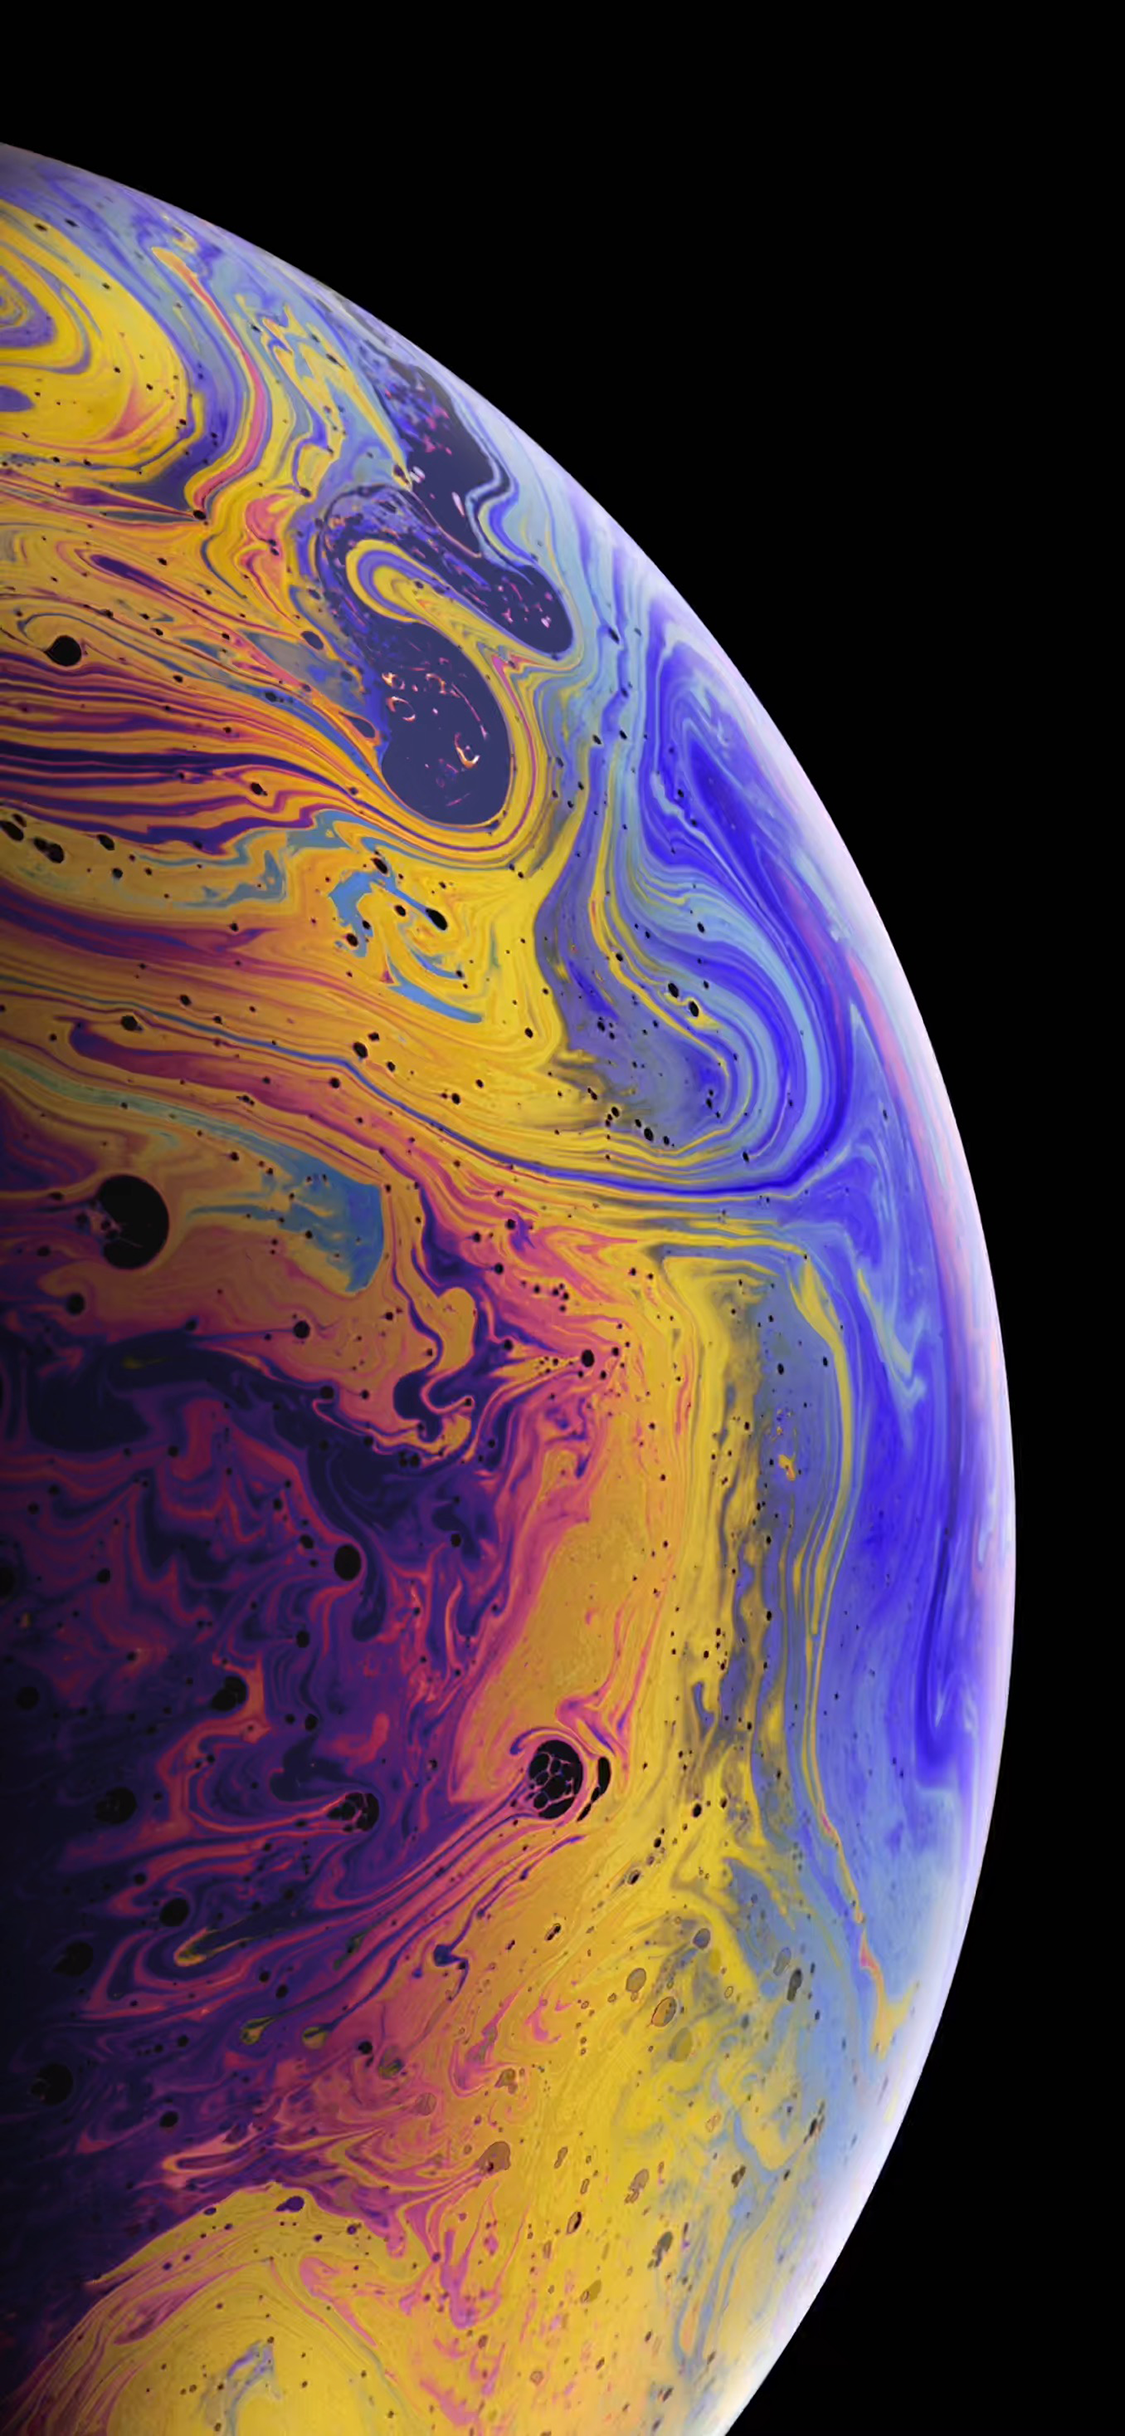 26+] IPhone XS Max Earth Wallpapers - WallpaperSafari